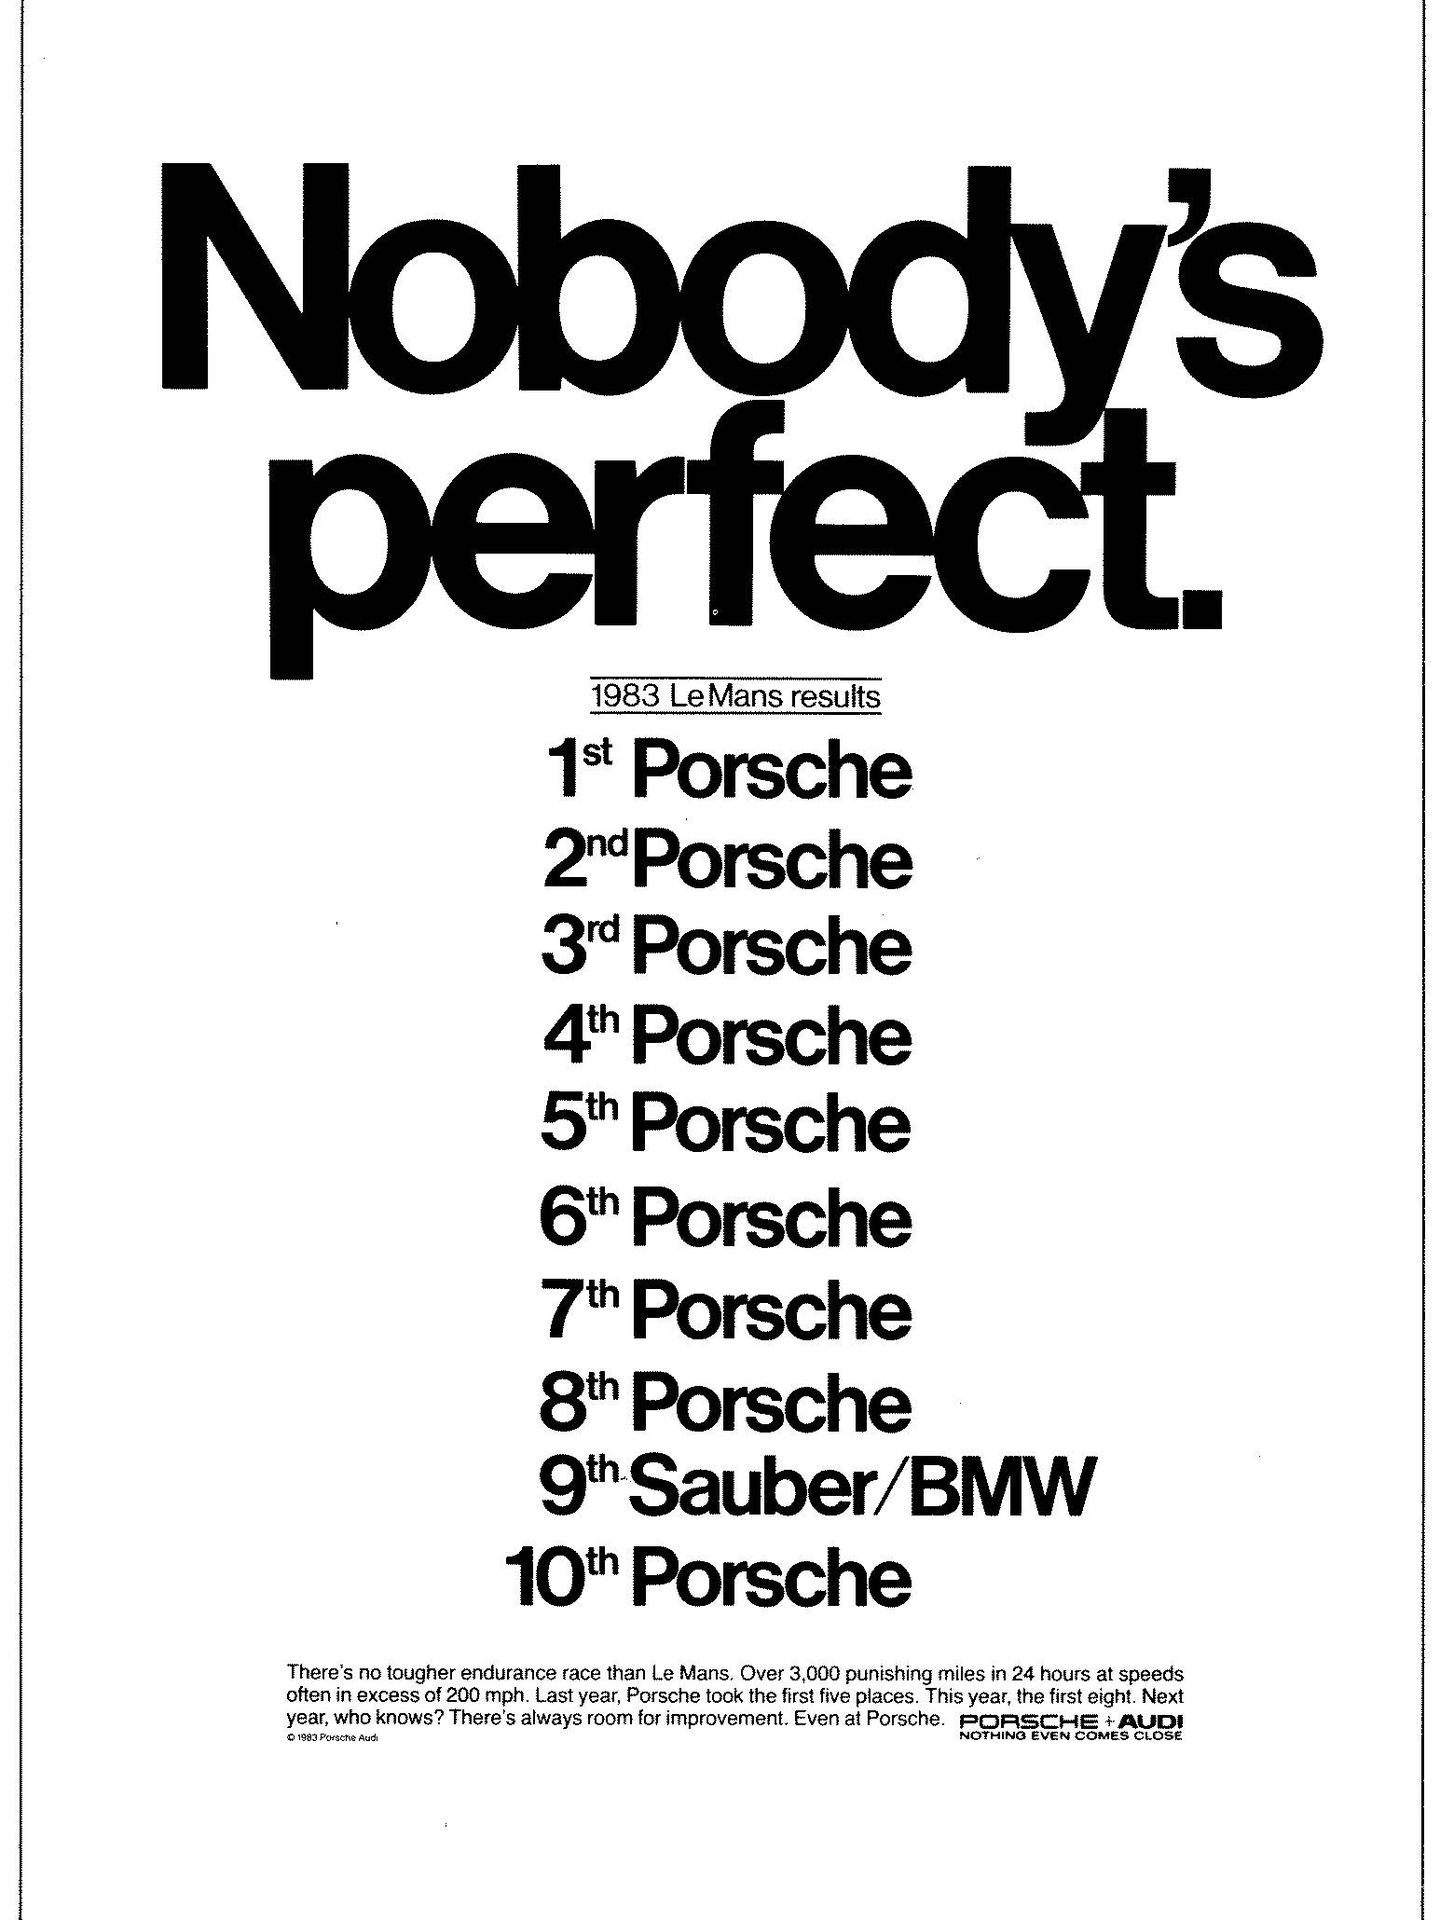 Publicidad 24 horas de Le Mans de Porsche en 1983. (Porsche)